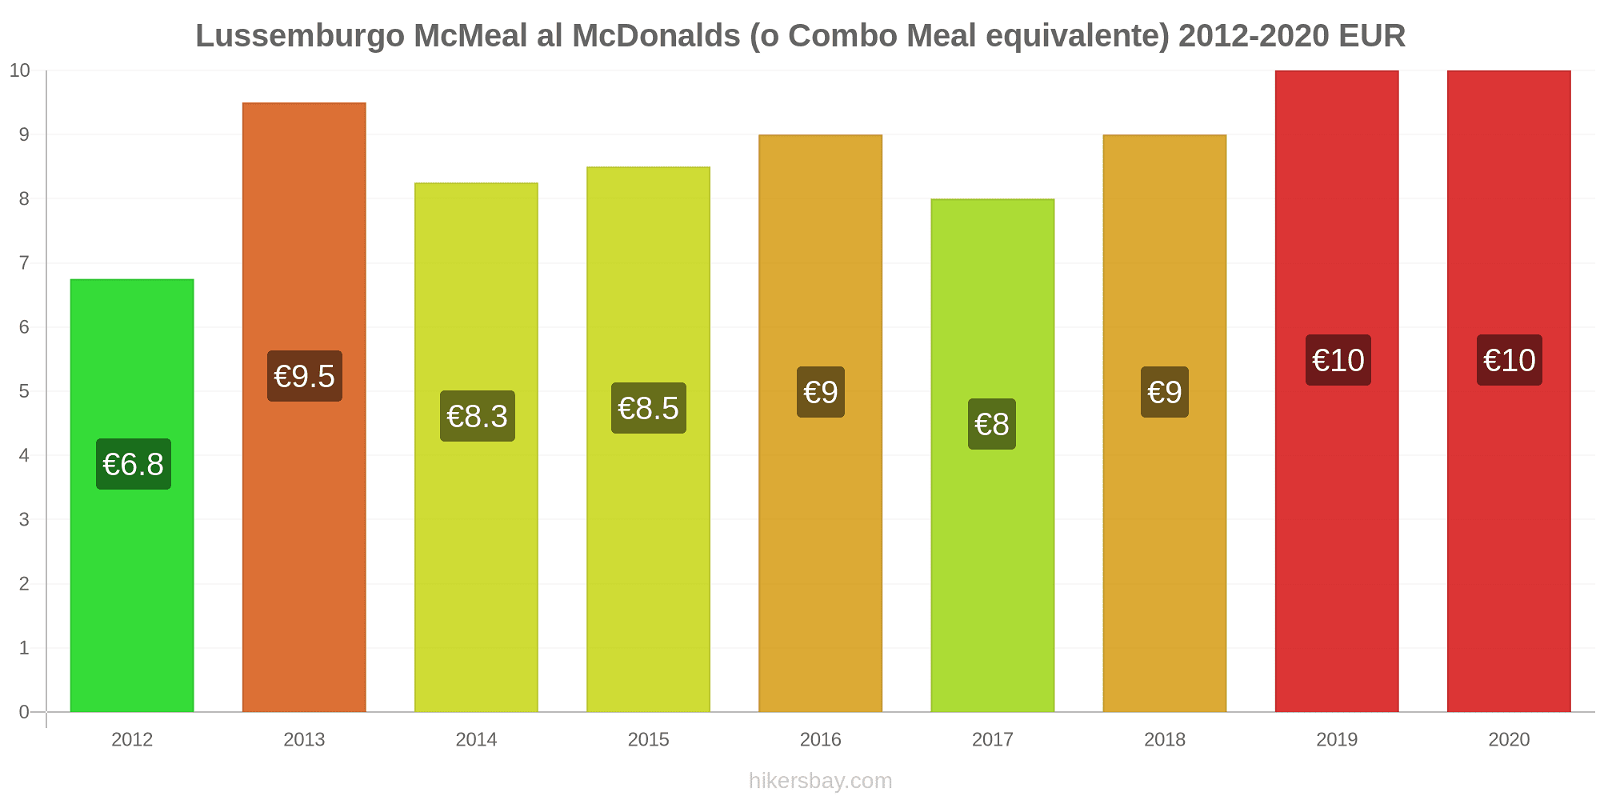 Lussemburgo variazioni di prezzo McMeal al McDonalds (o in un equivalente fastfood) hikersbay.com